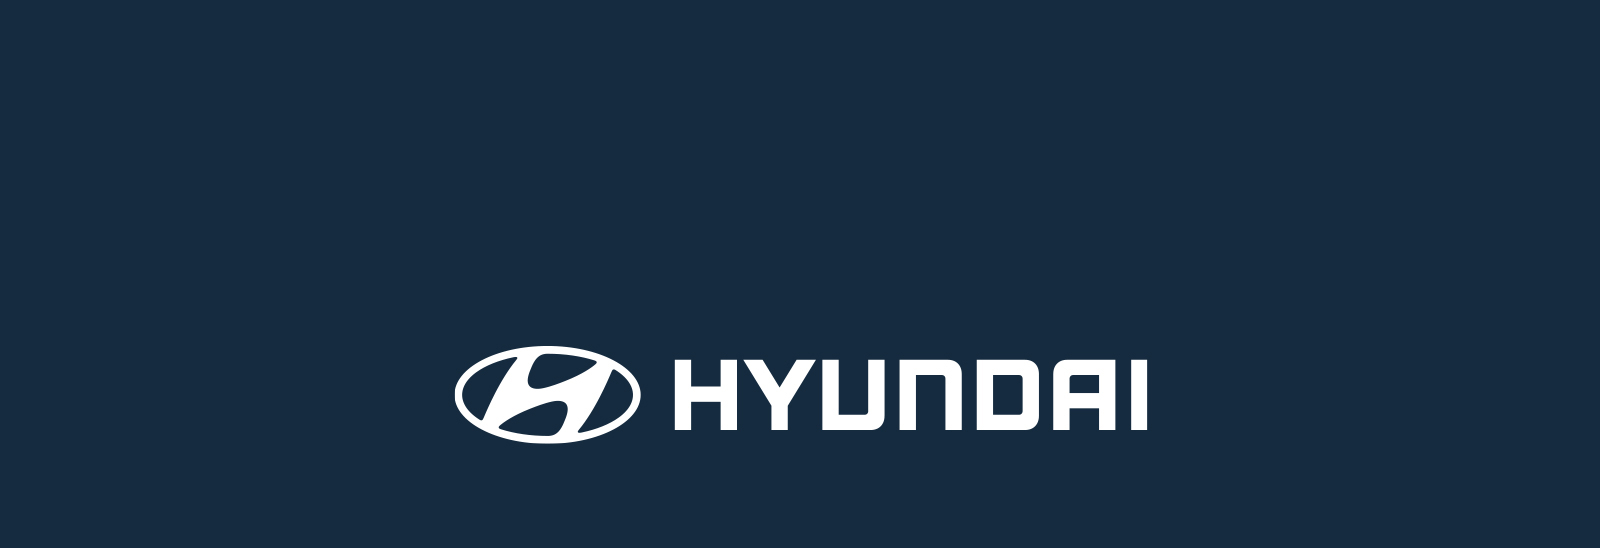 Logo Hyundai en fondo azul